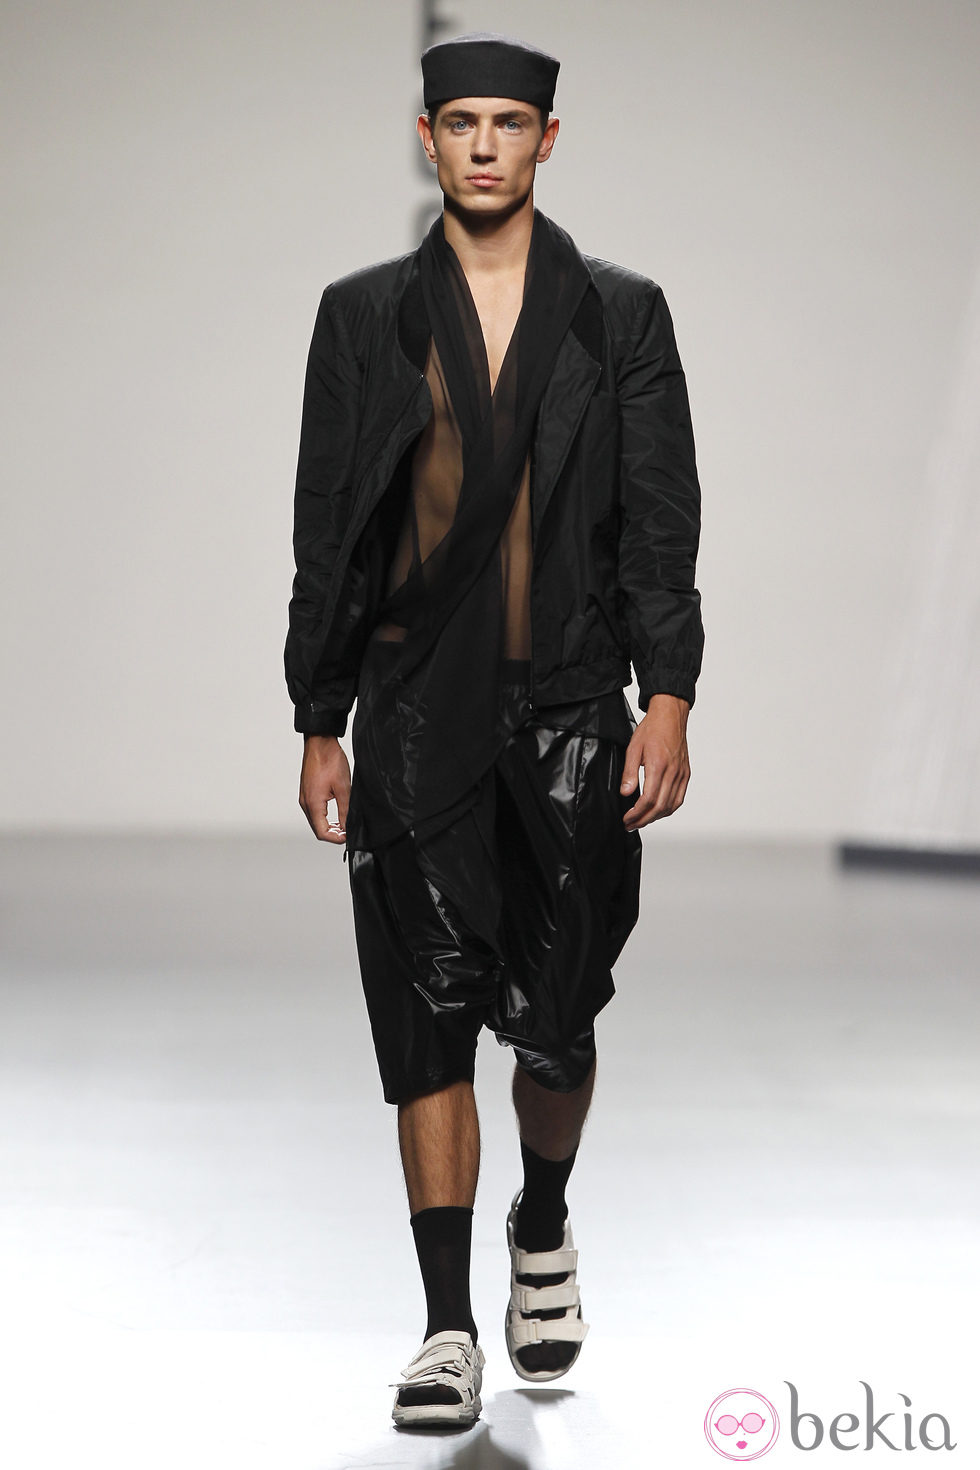 Chaqueta y pantalón en negro de hombre de Alberto Puras en Cibeles, colección primavera 2012